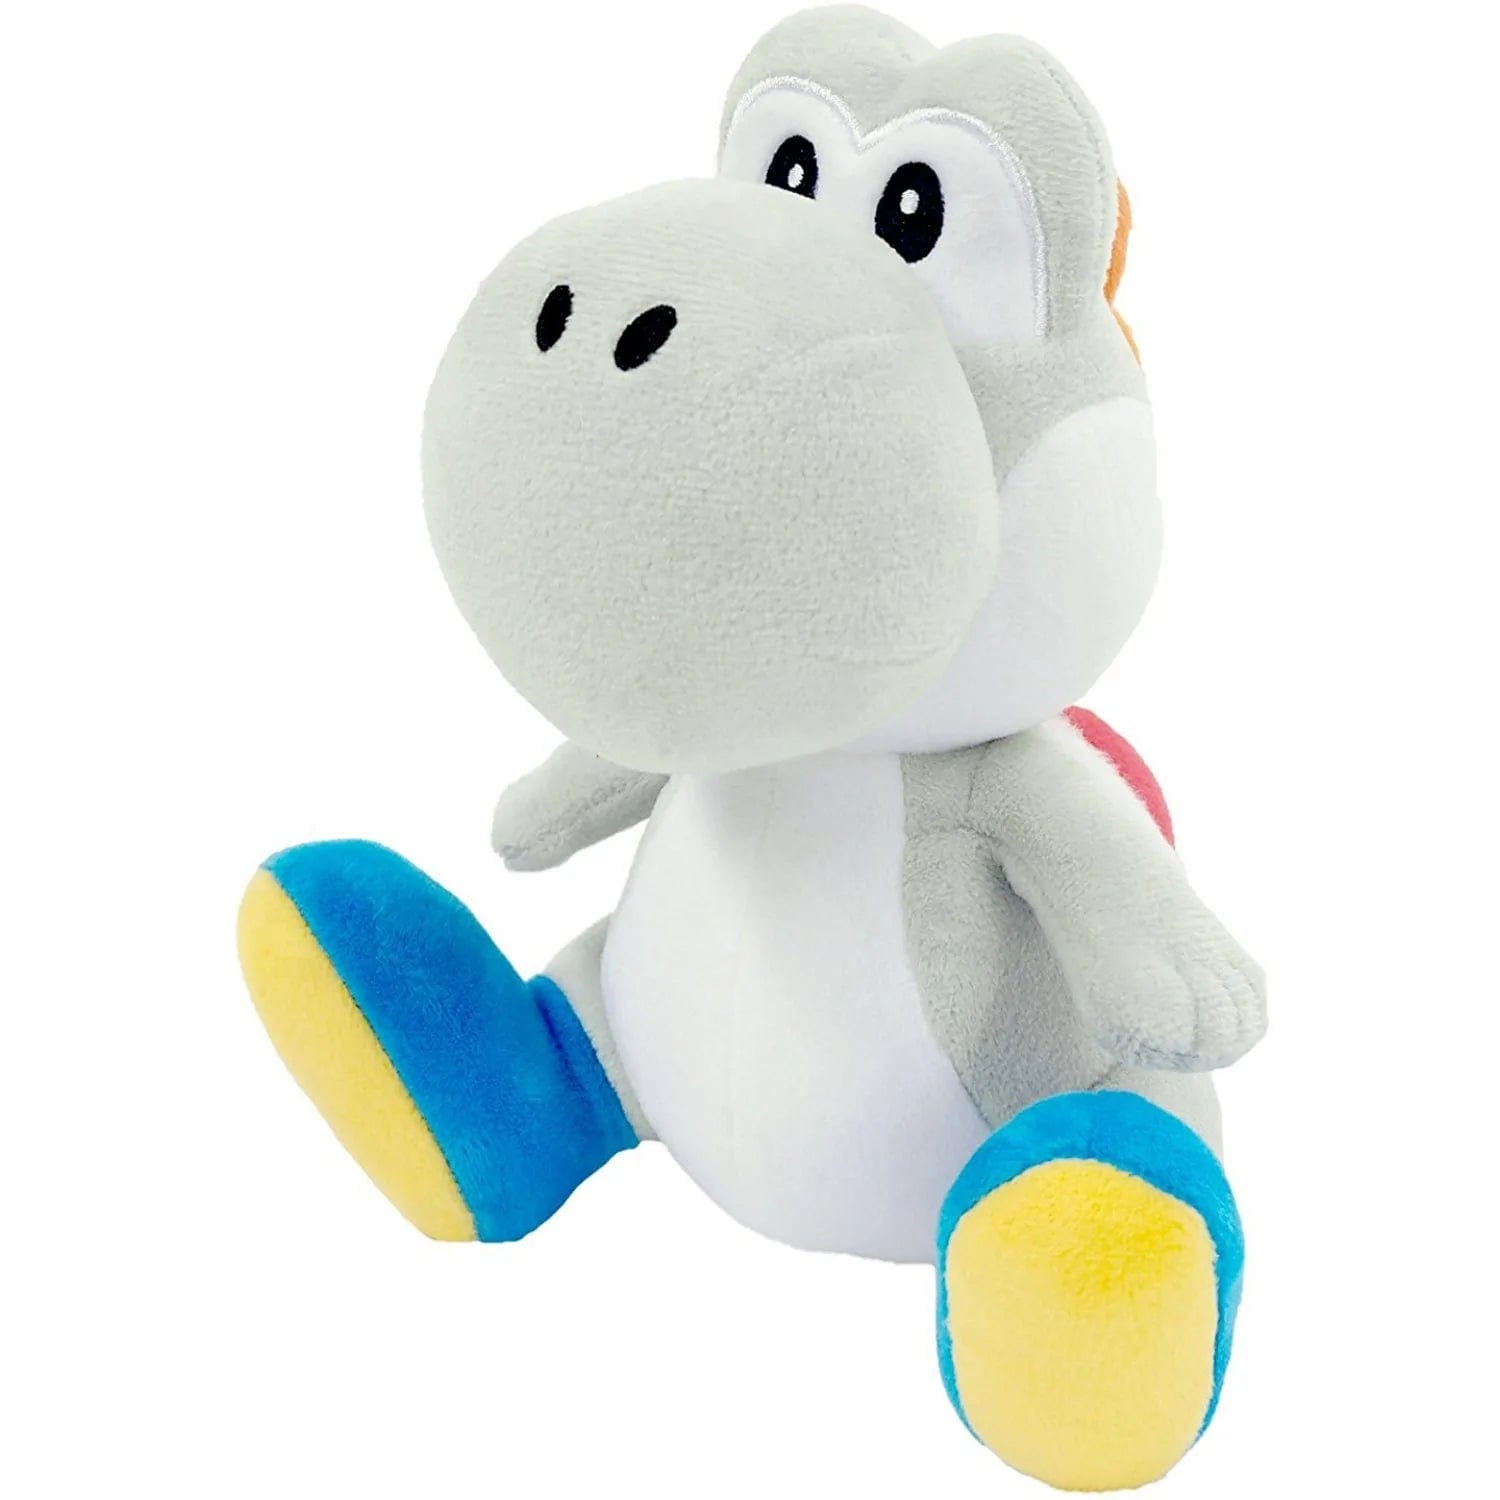 Little Buddy Super Mario All Star Yoshi - White Yoshi Plush 7"